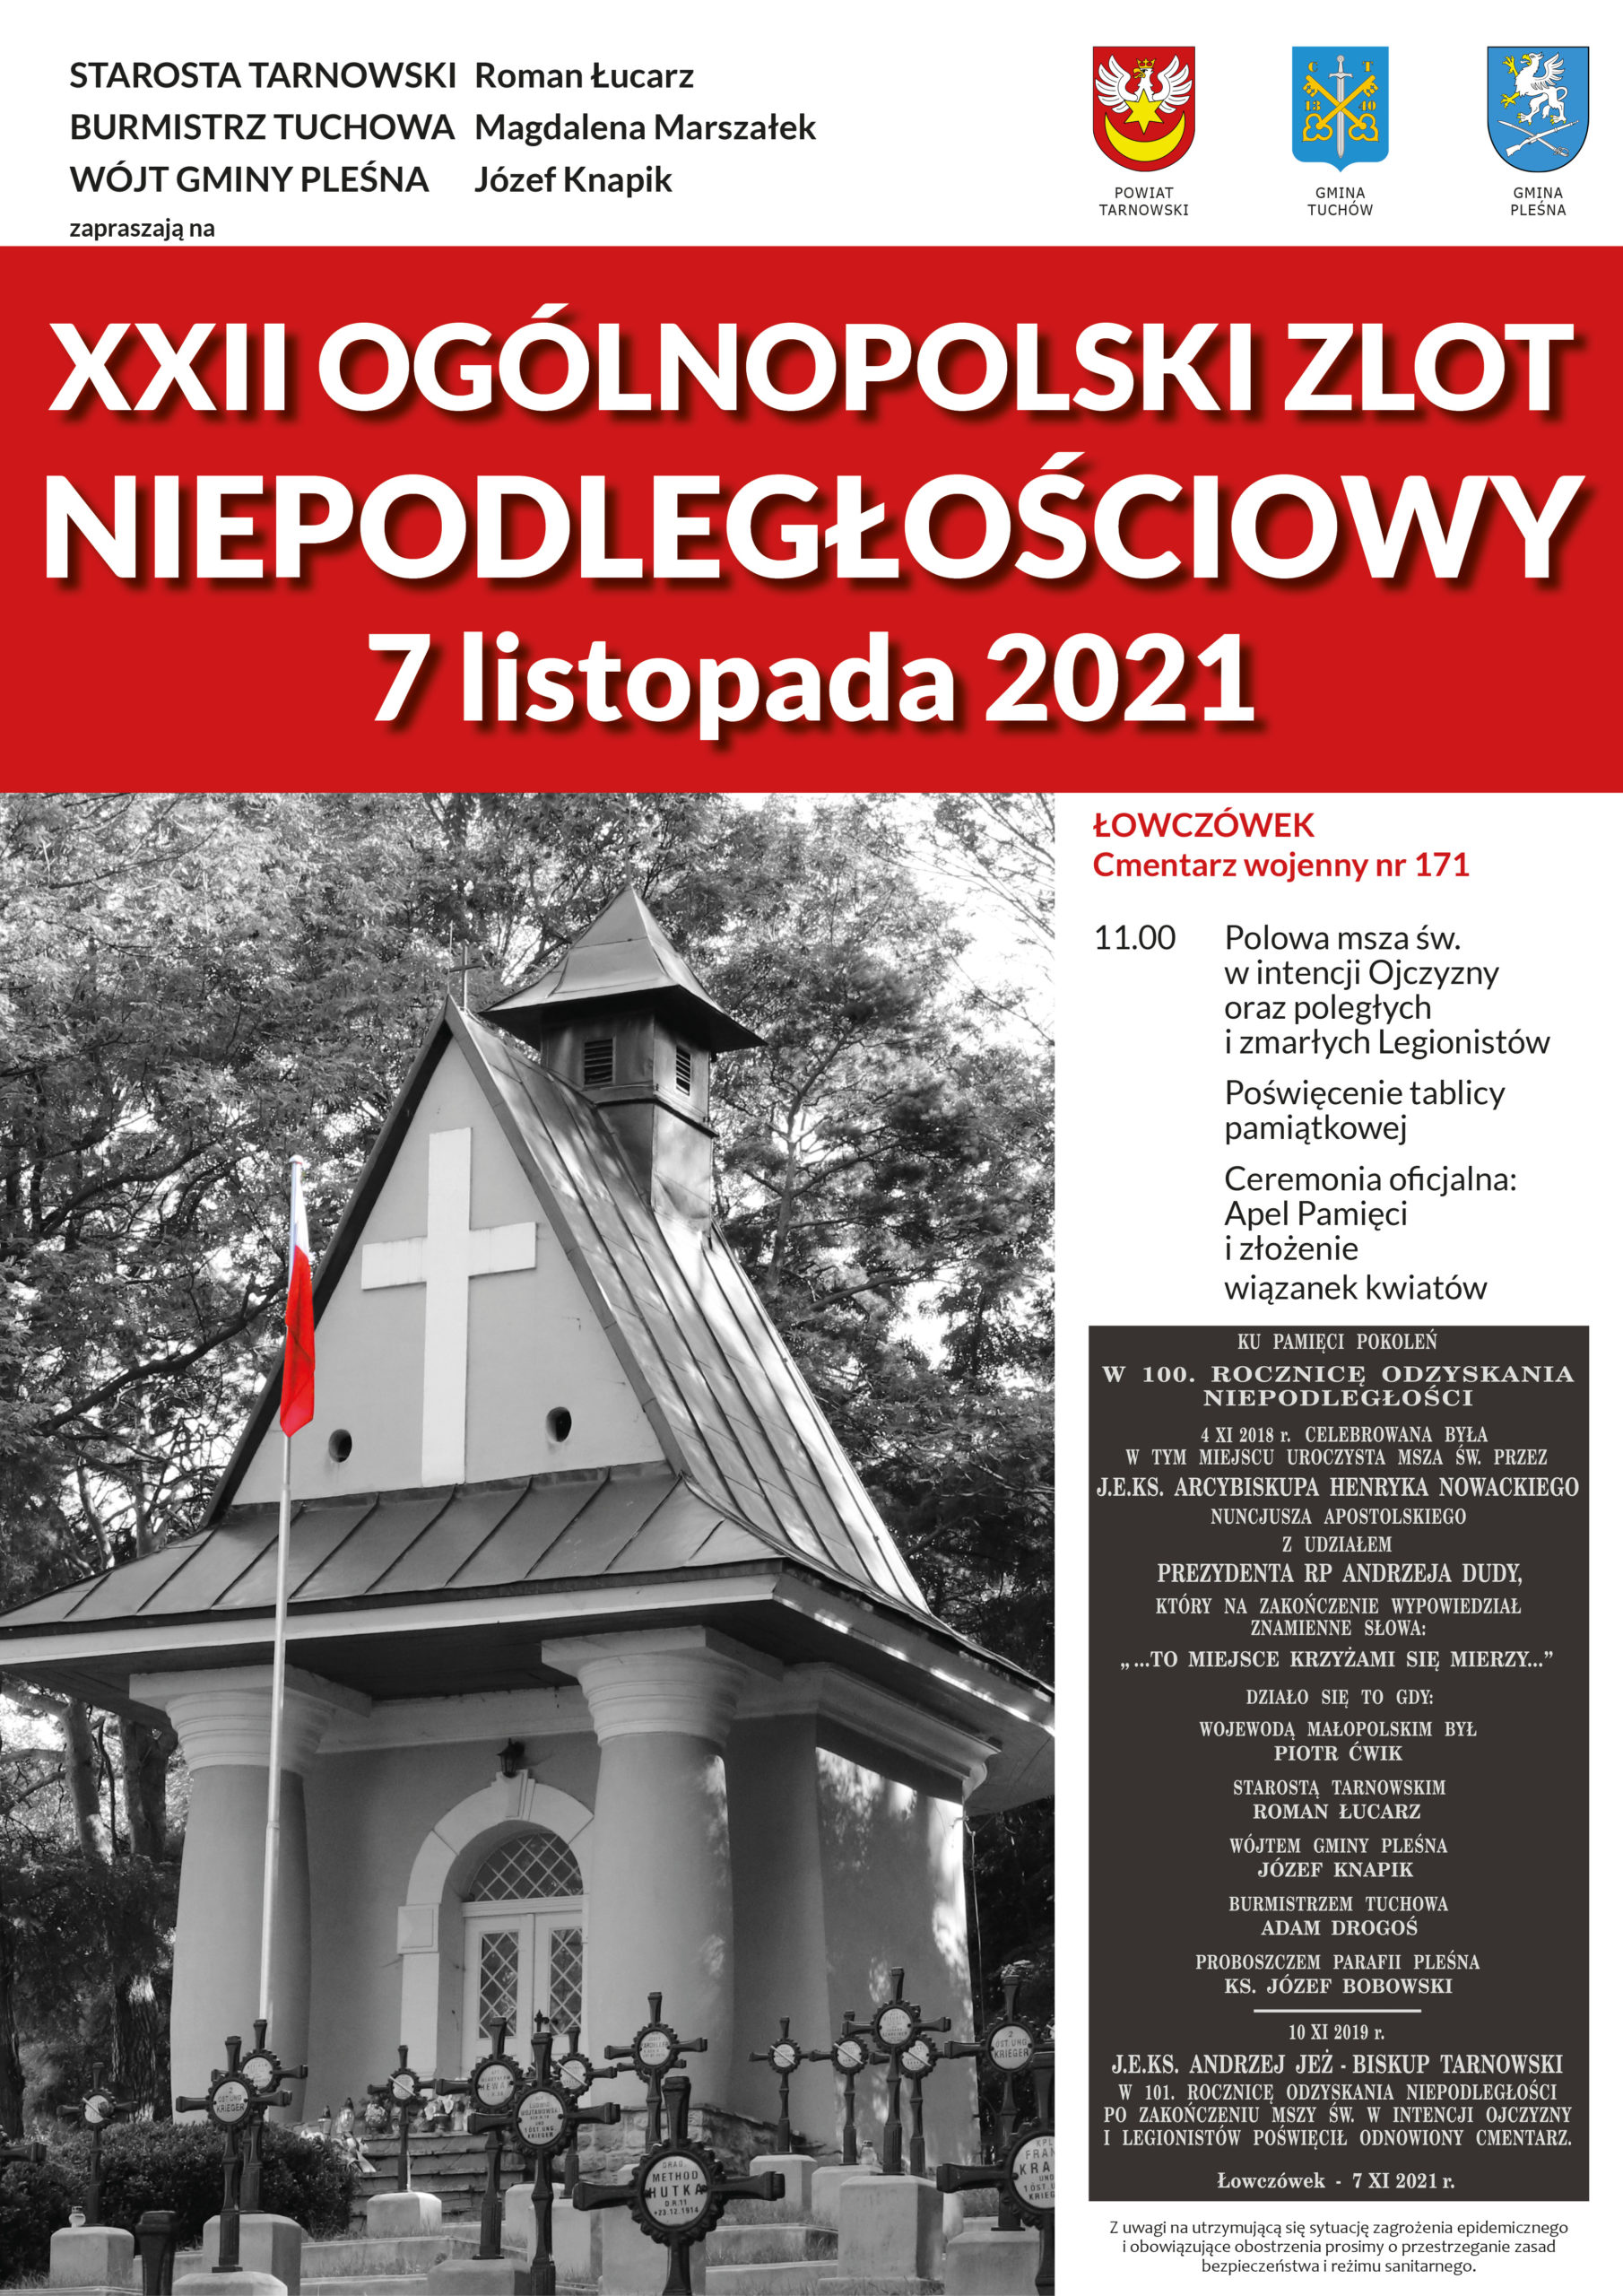 XXII Zlot Niepodłegłościowy w Łowczówku